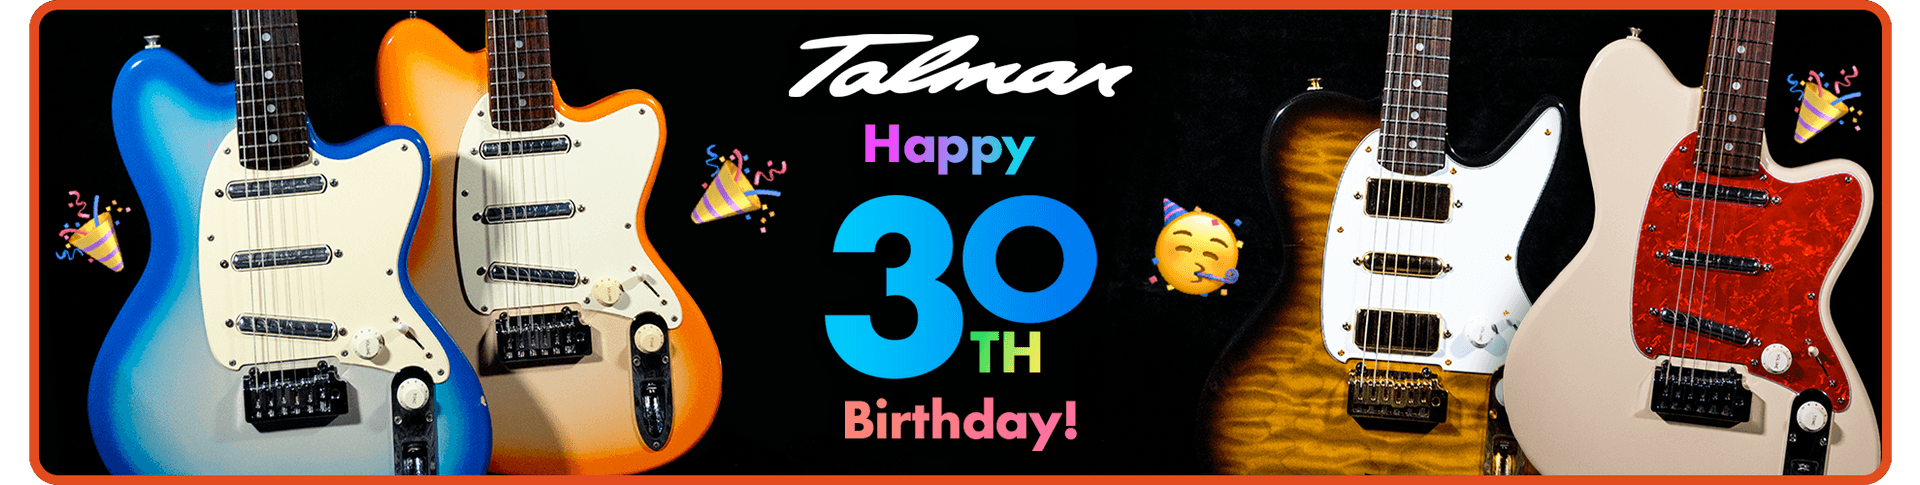 Talman Happy 30th Birthday!